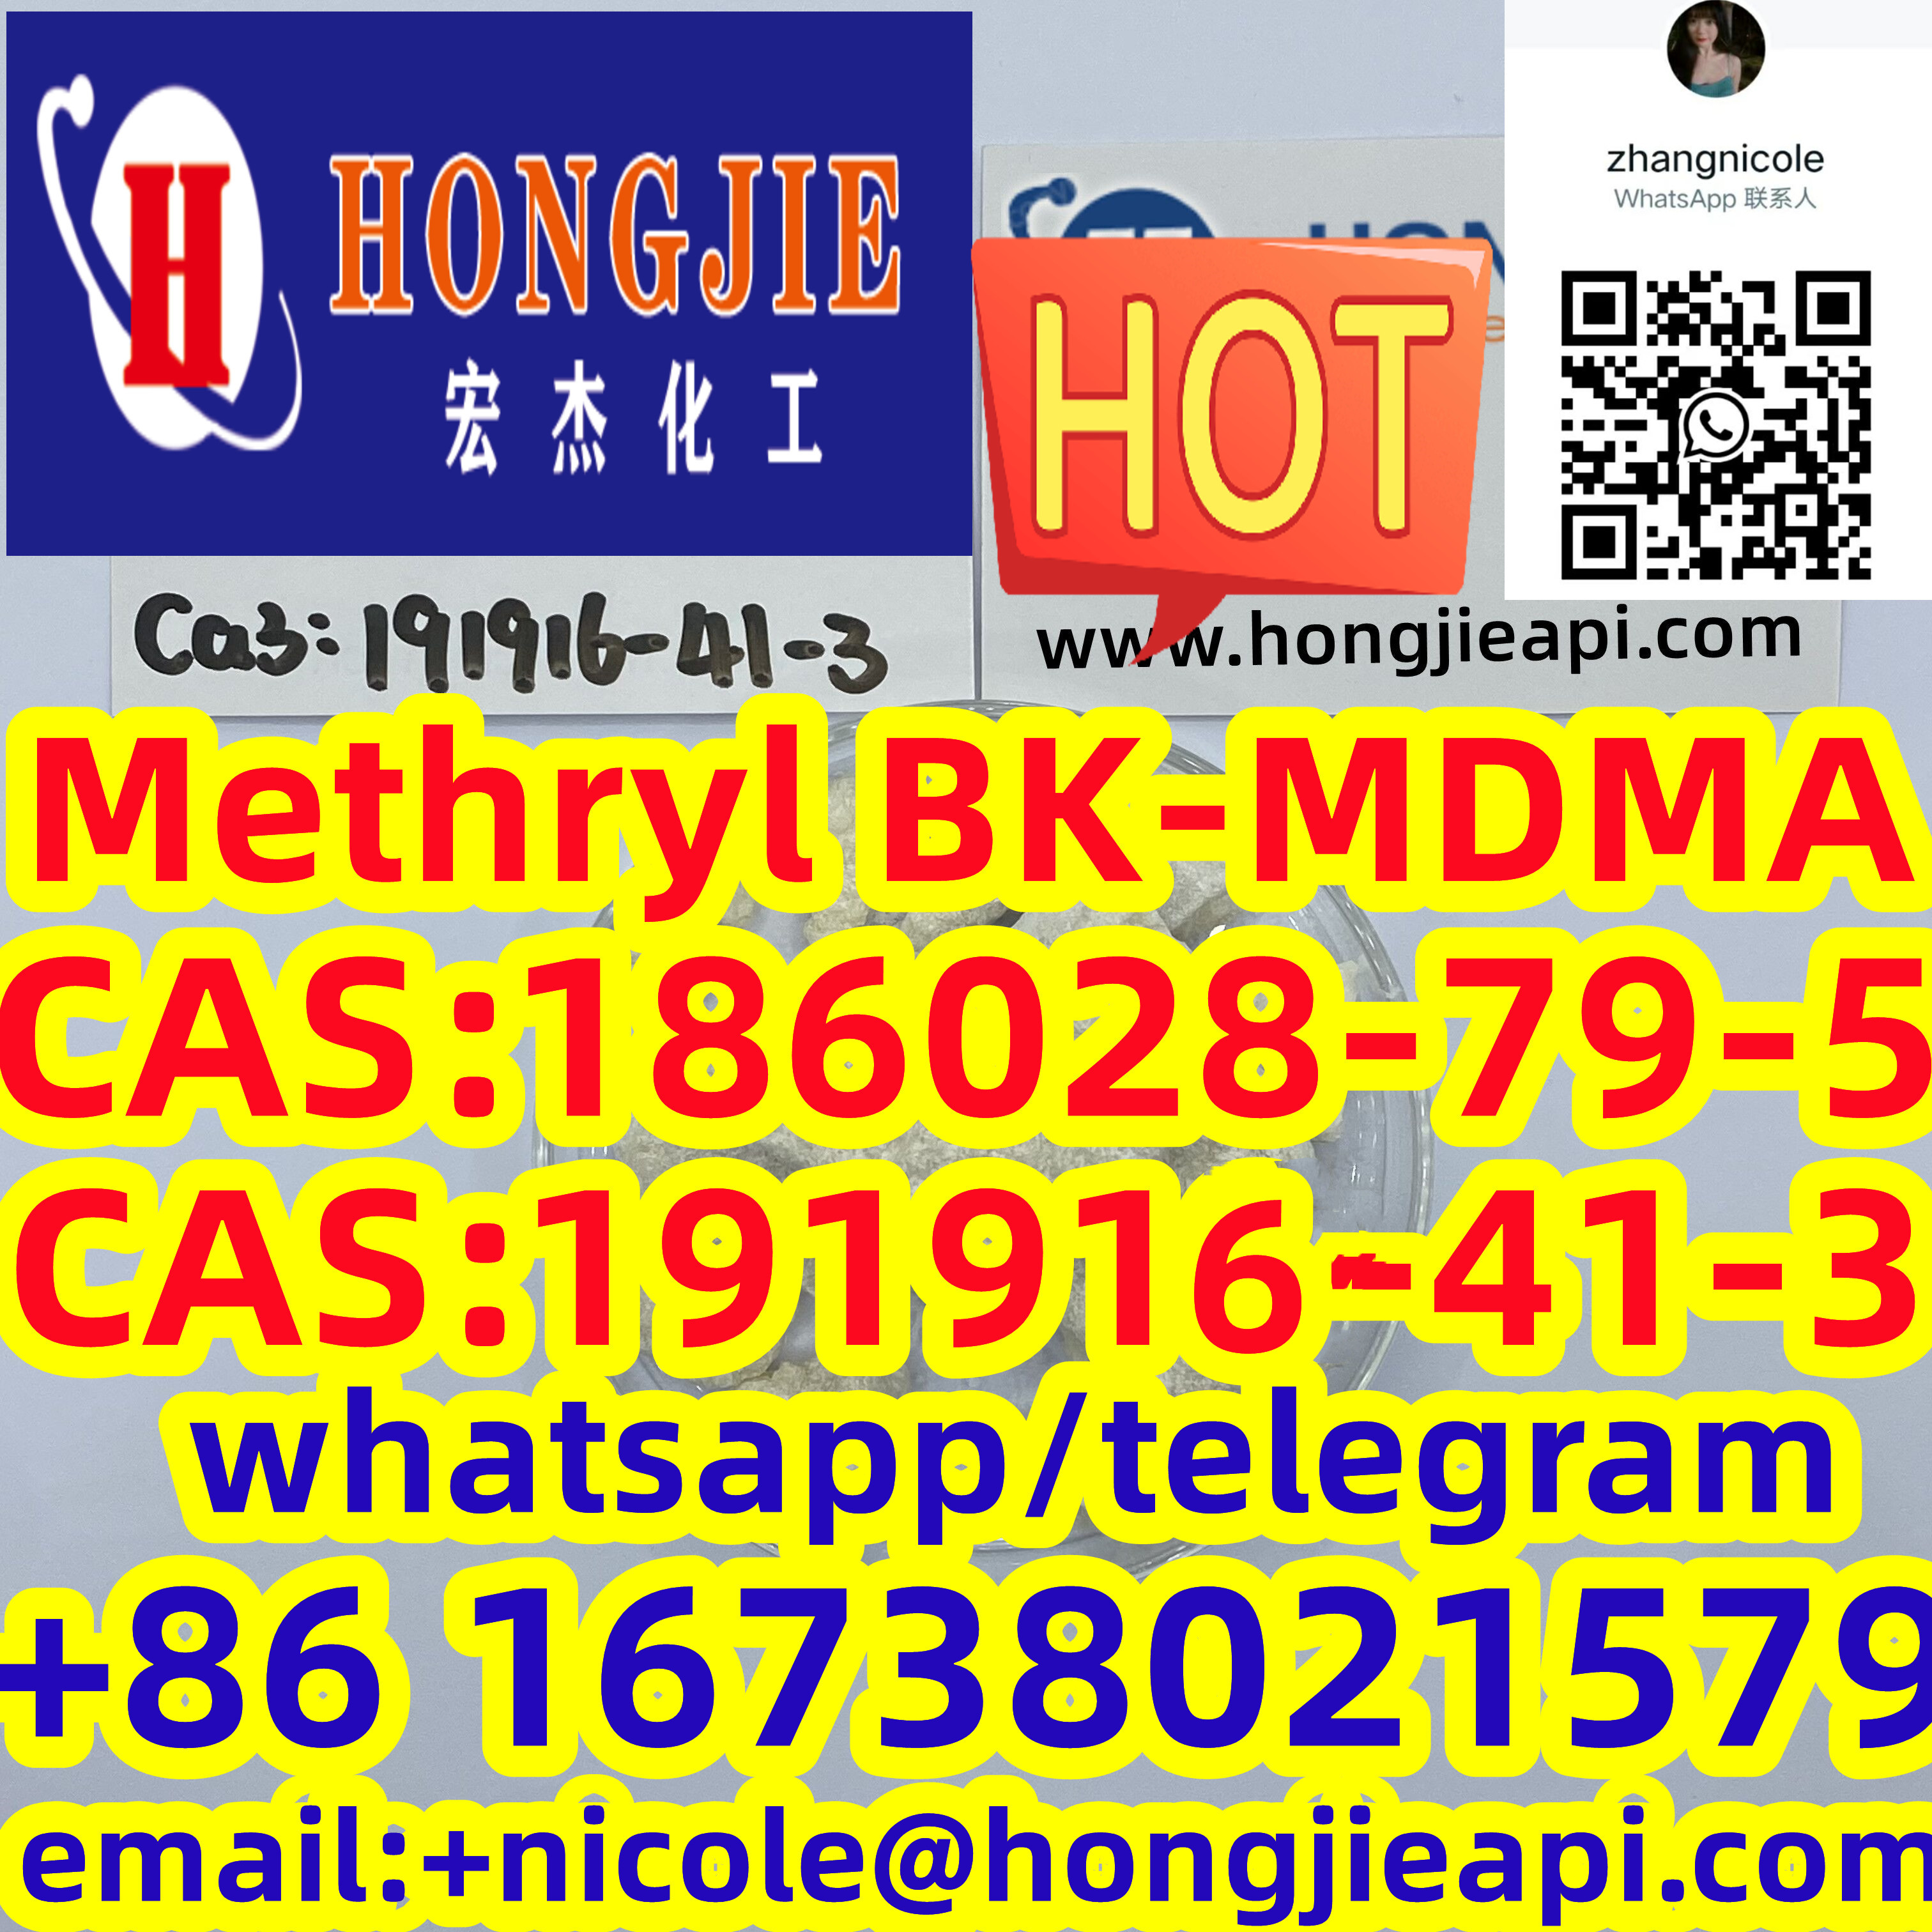 High quality Methryl BK-MDMA CAS:186028-79-5